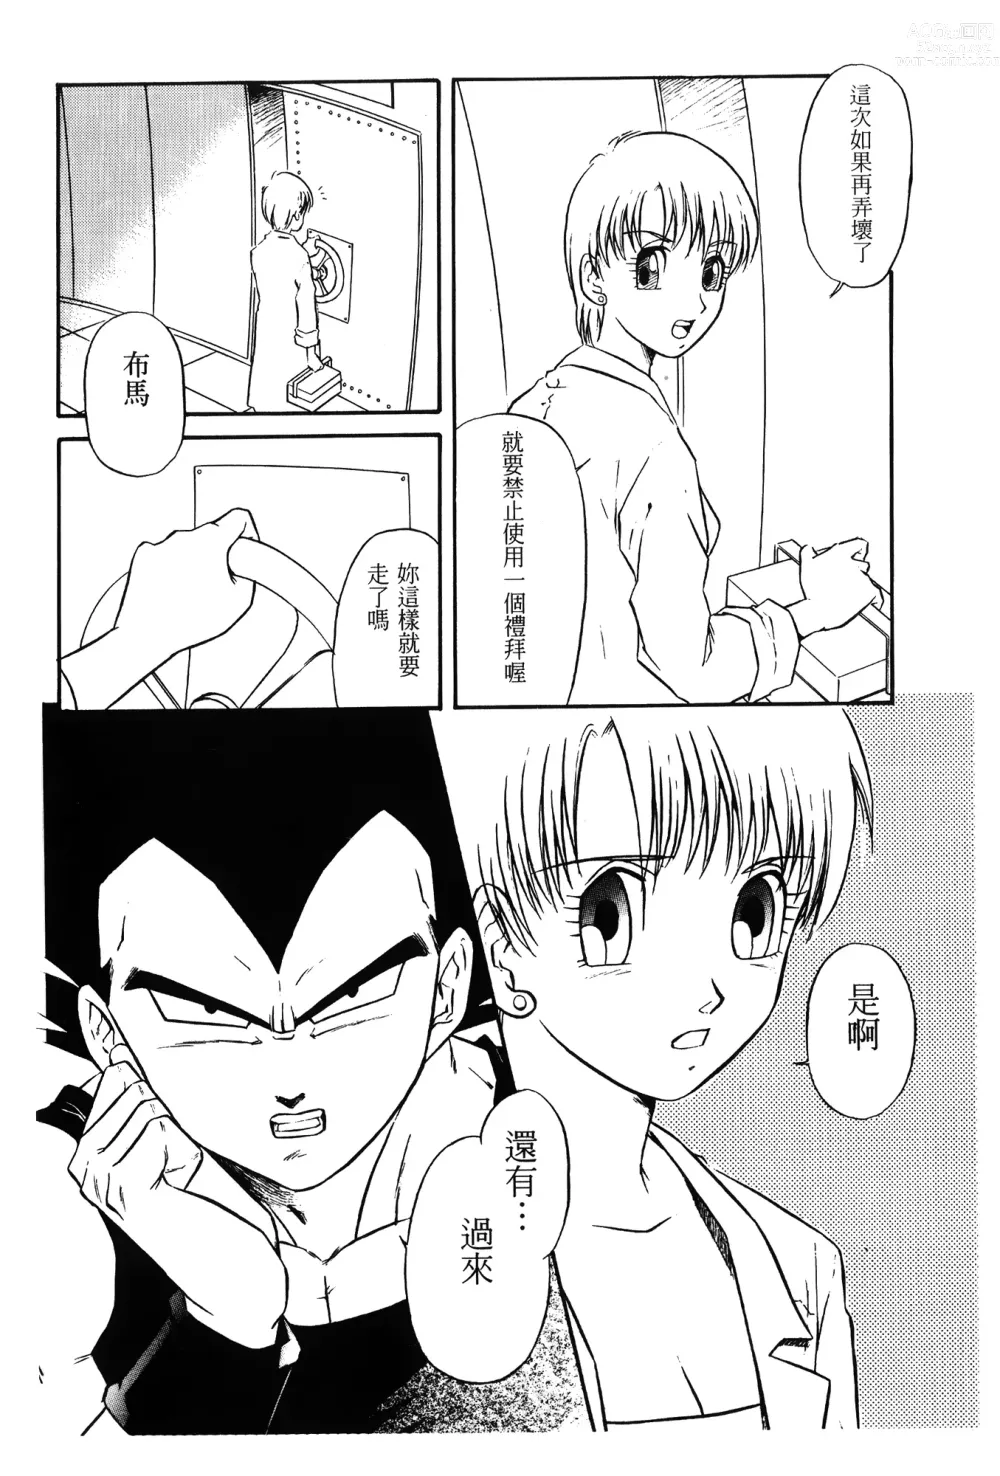 Page 5 of doujinshi ドラゴンパール 01